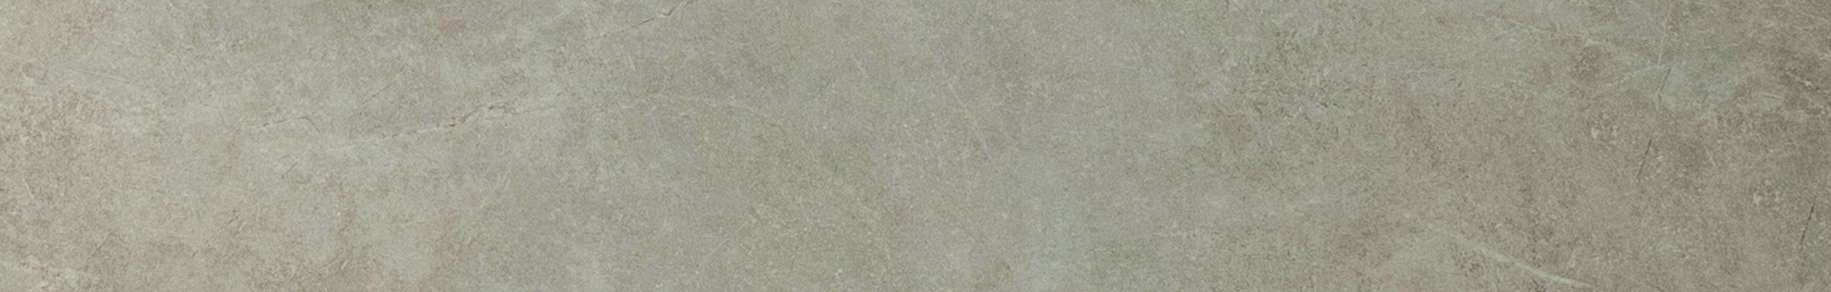 Original Style Tileworks Berliner Sand Natural Tile 20x120cm